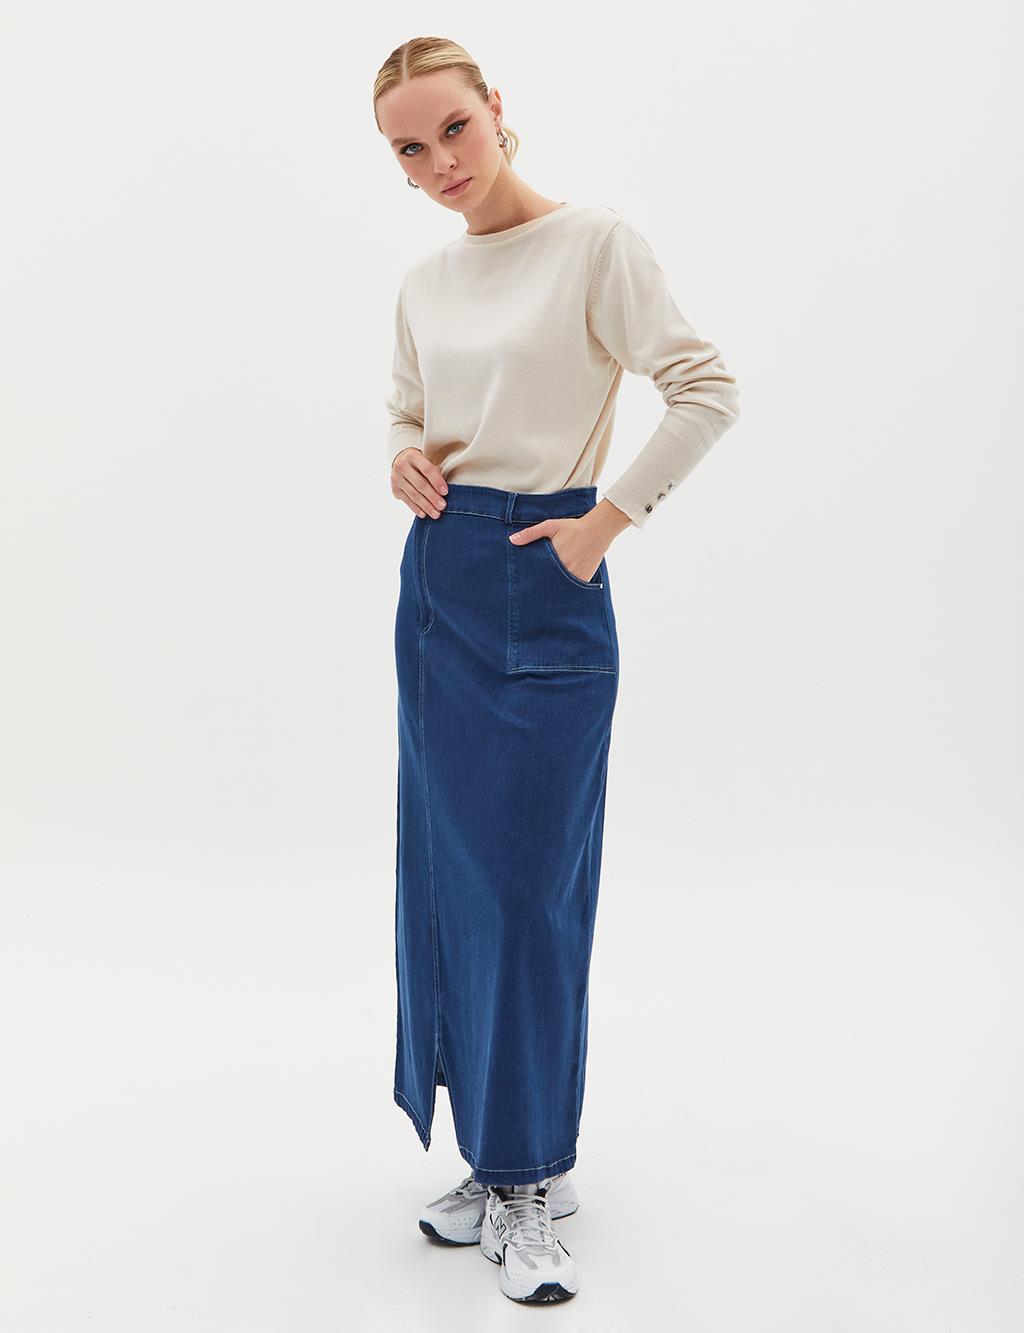 Mini Slit Pocket Denim Skirt Dark Navy Blue